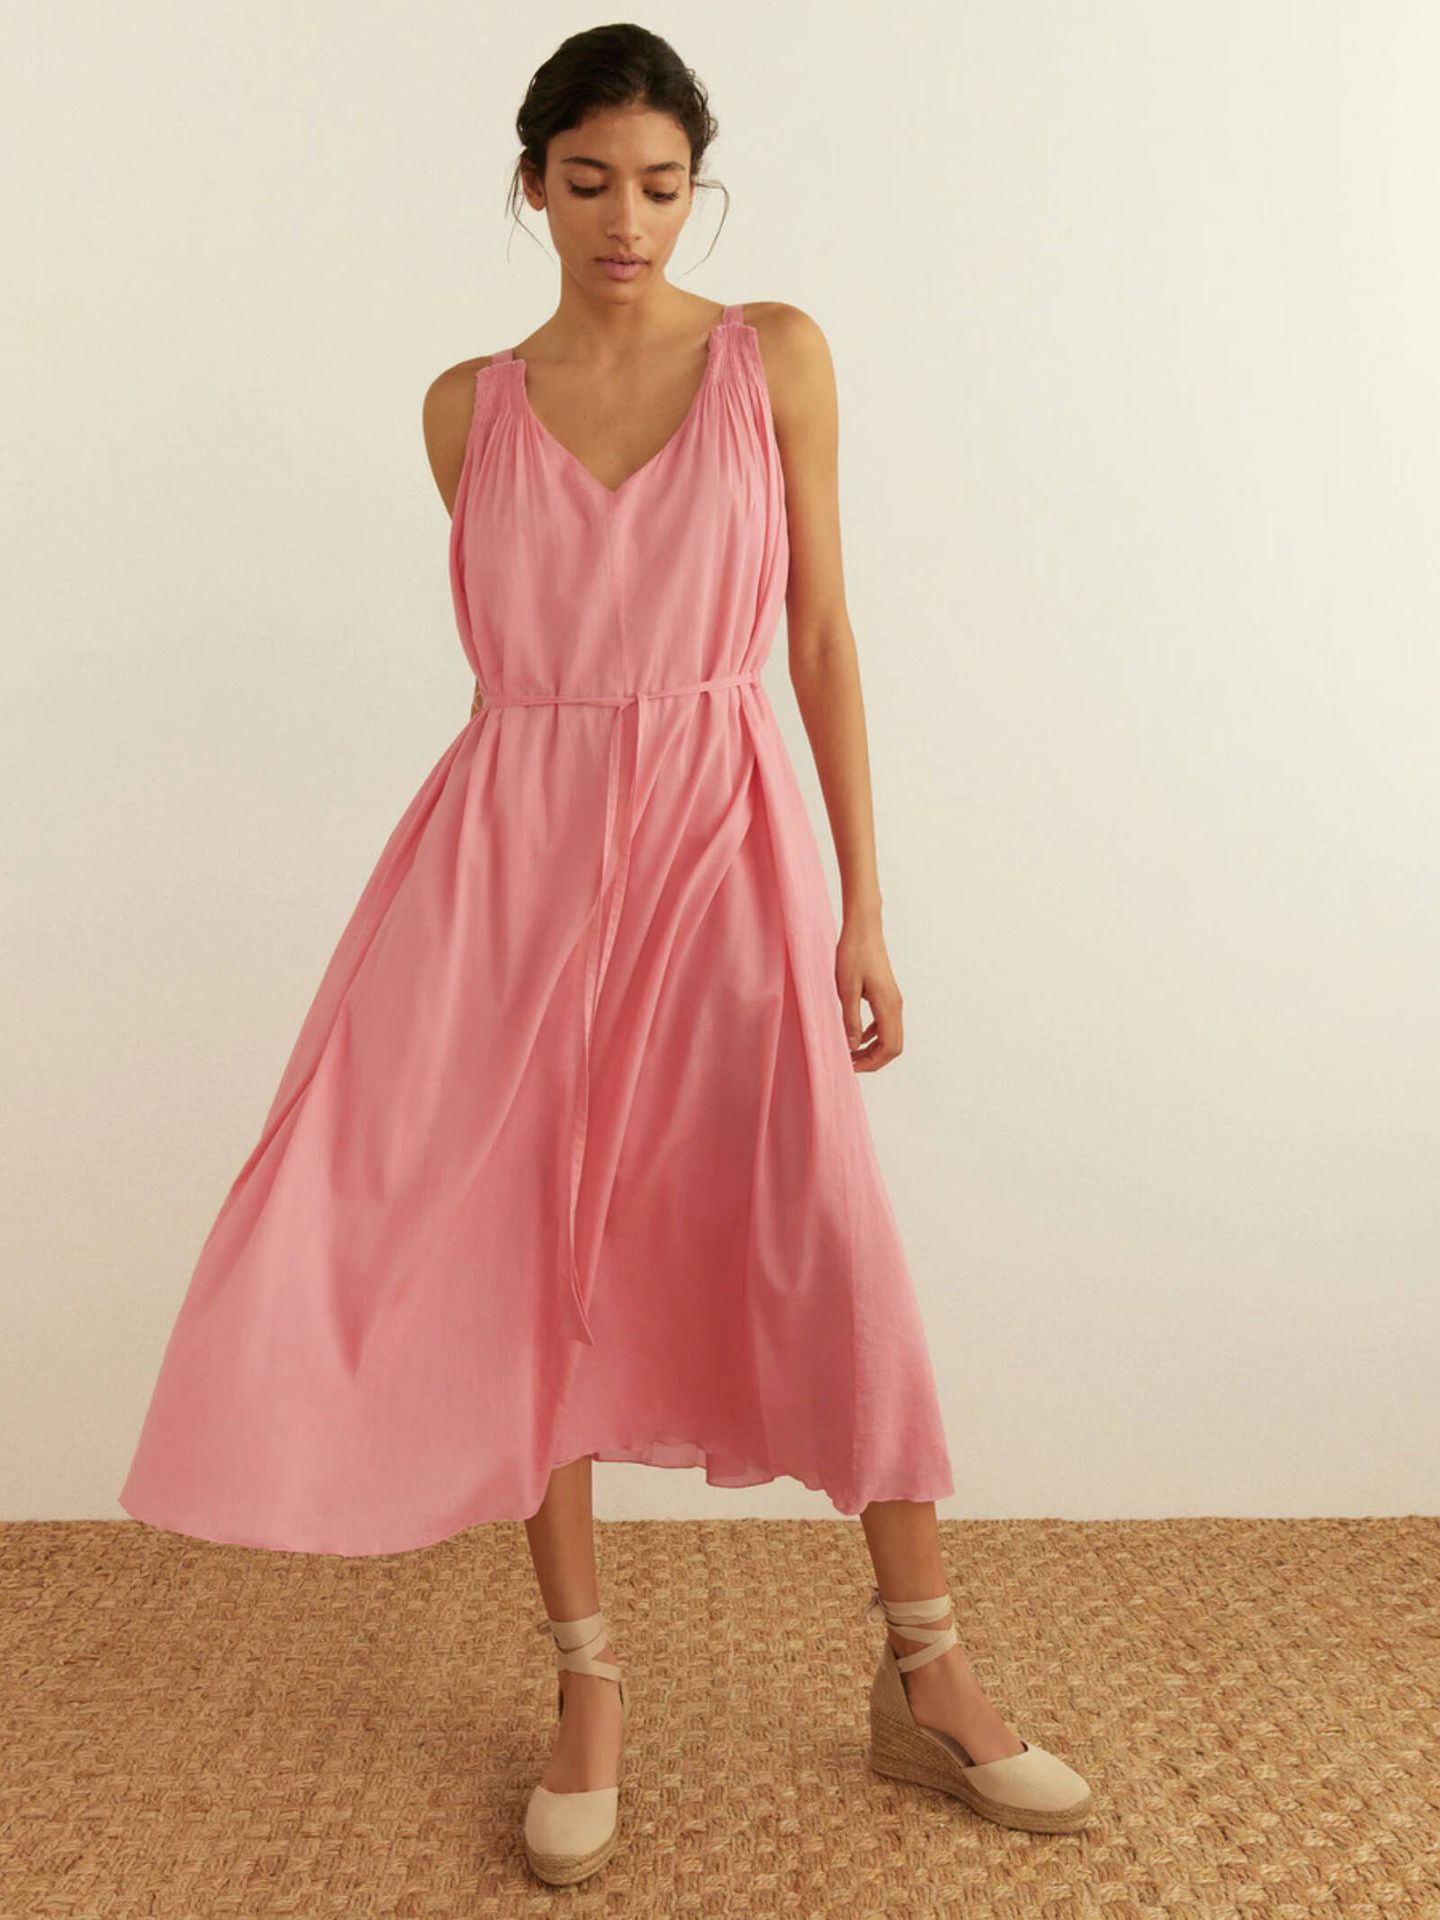 Vestido rosa con tirantes, a la venta en El Corte Inglés. (Cortesía)